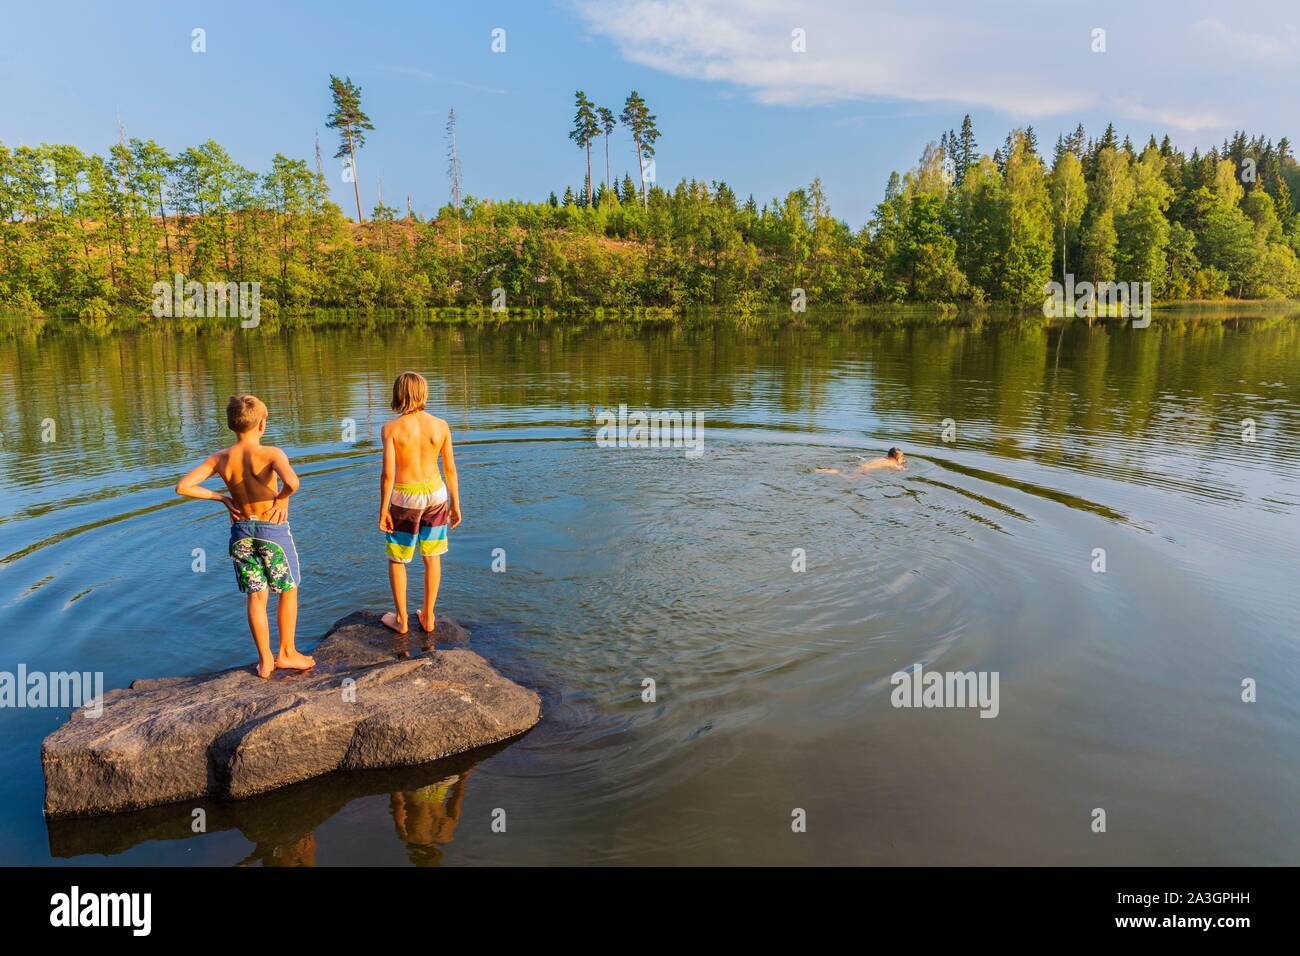 La Svezia, nella contea di Vastra Gotaland, Hokerum, Ulricehamn borgo, Rochat relazione familiare e rilassante con gli amici in uno dei laghi intorno alla casa Foto Stock